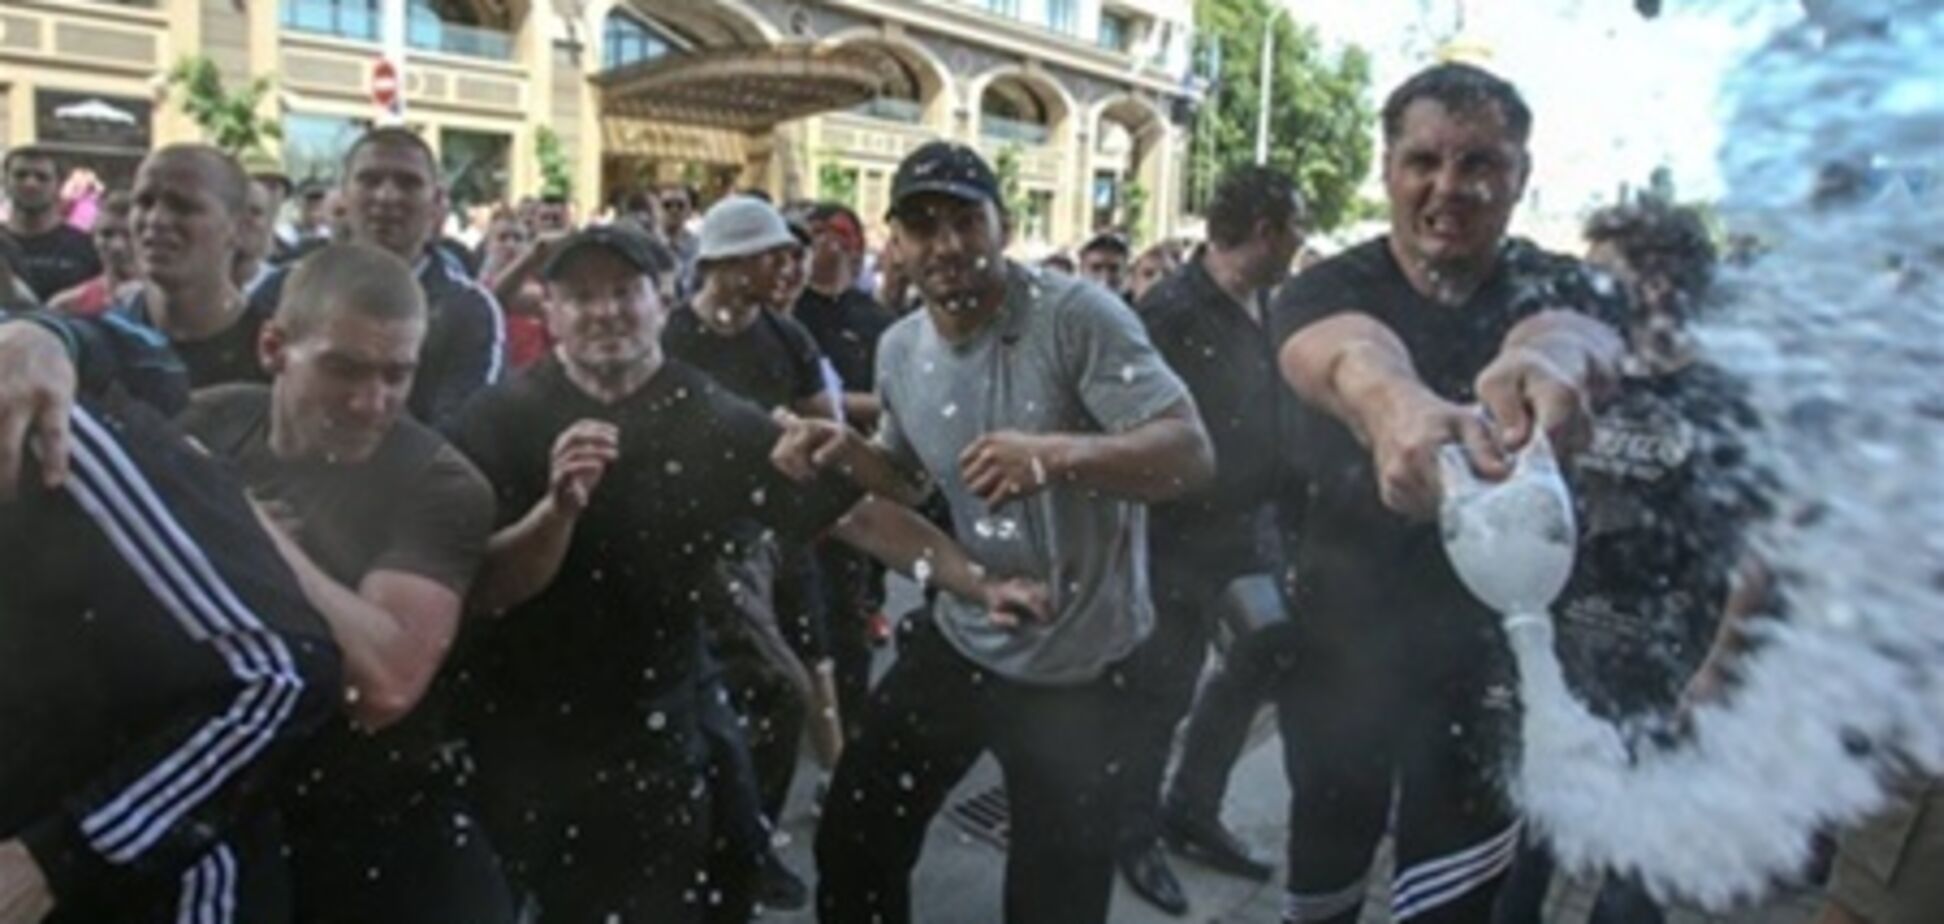 Установлена личность еще одного участника драки 18 мая в Киеве